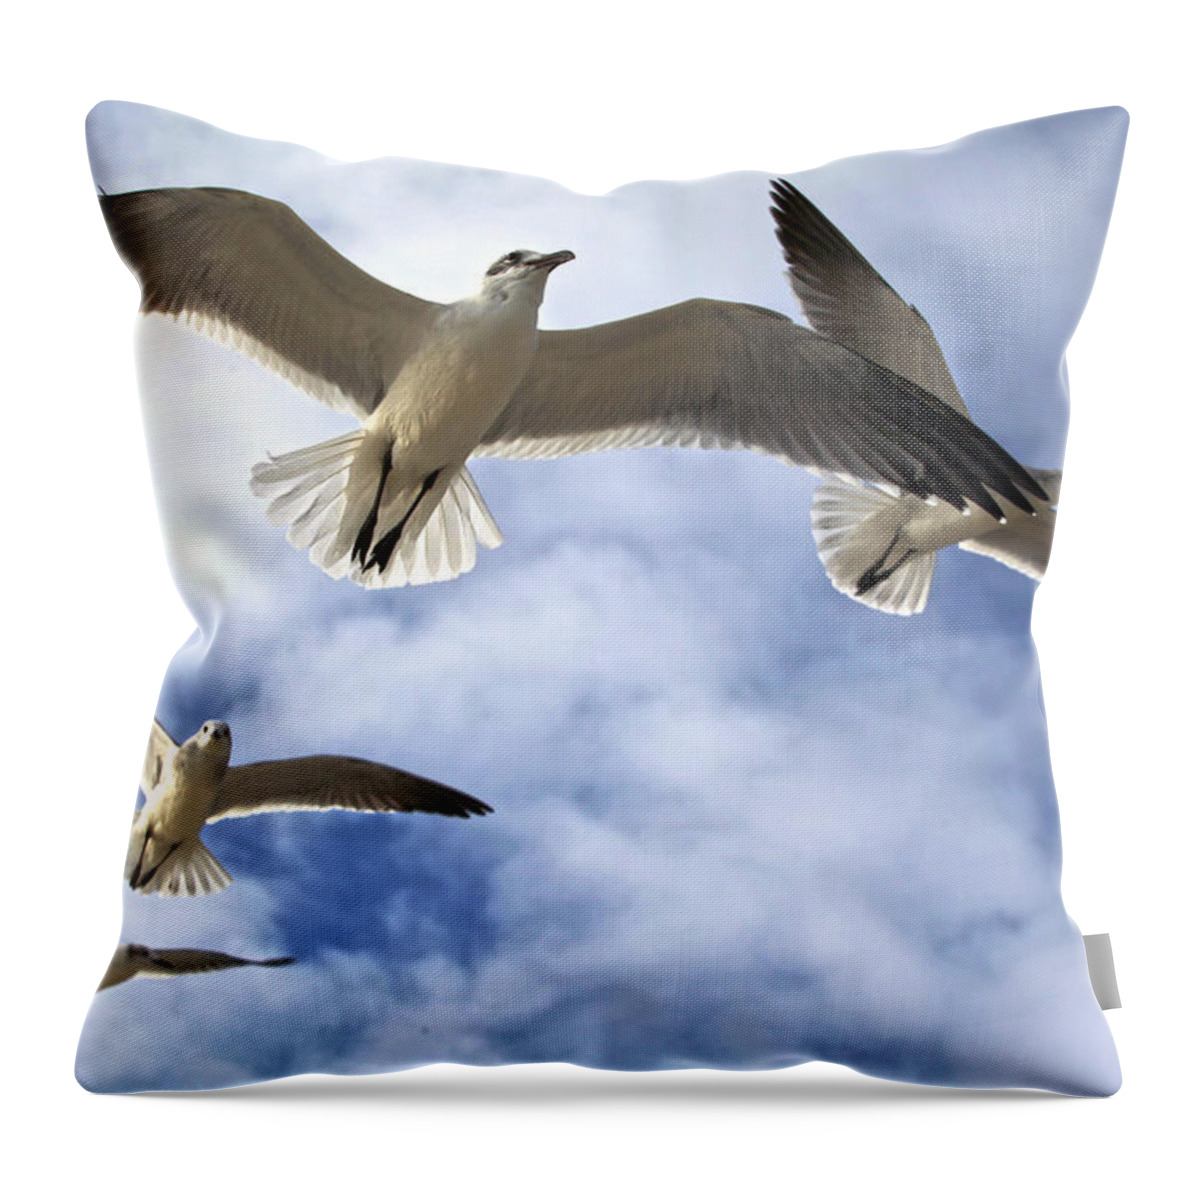 Gull Throw Pillow featuring the photograph Four Gulls by Robert Och